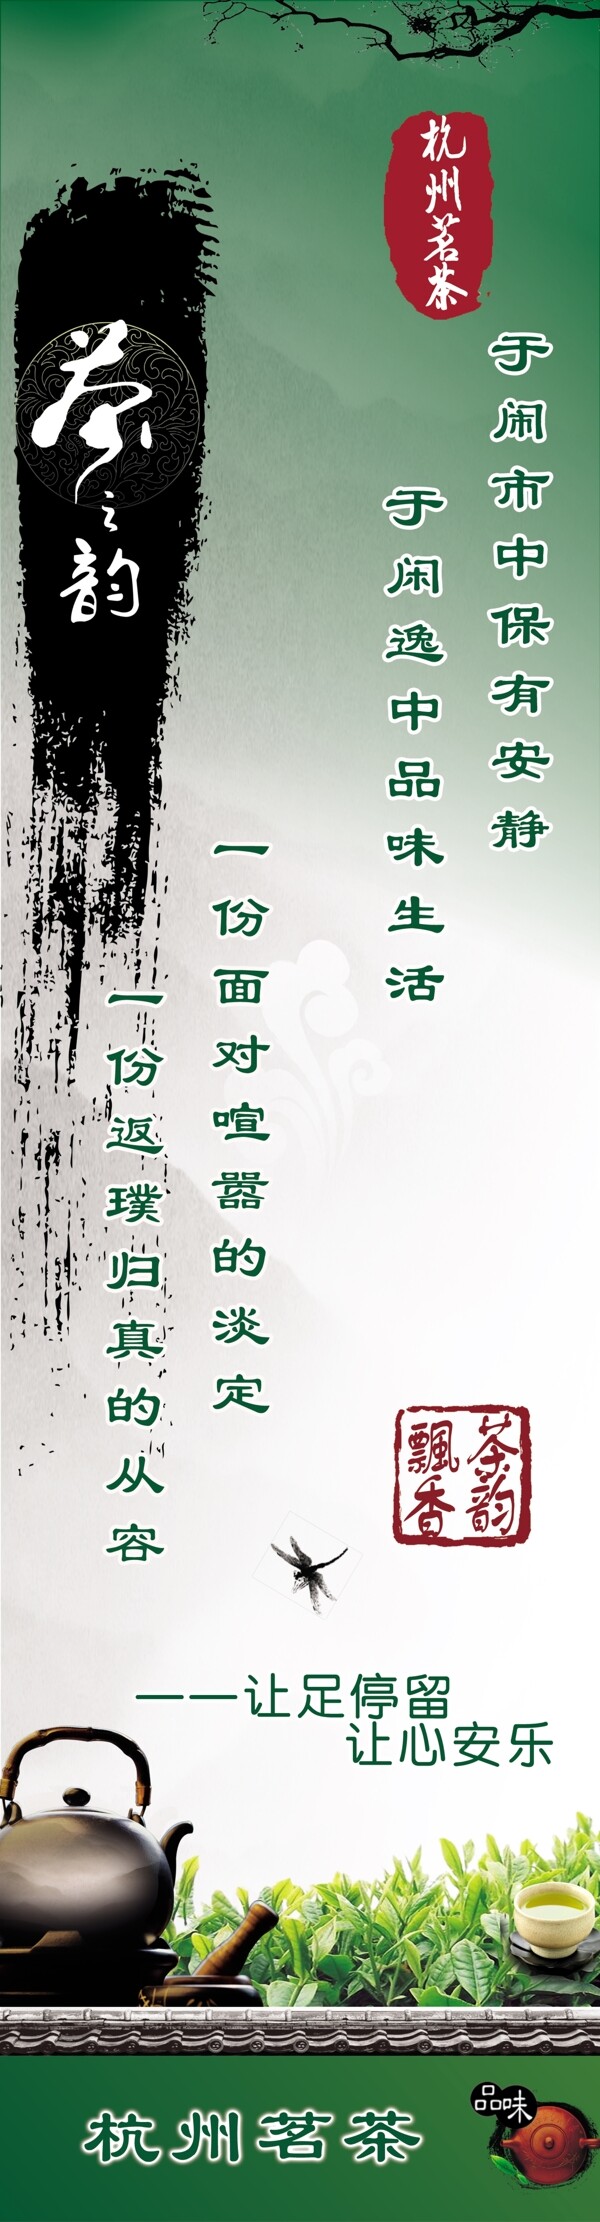 杭州茗茶茶之韵宣传海报